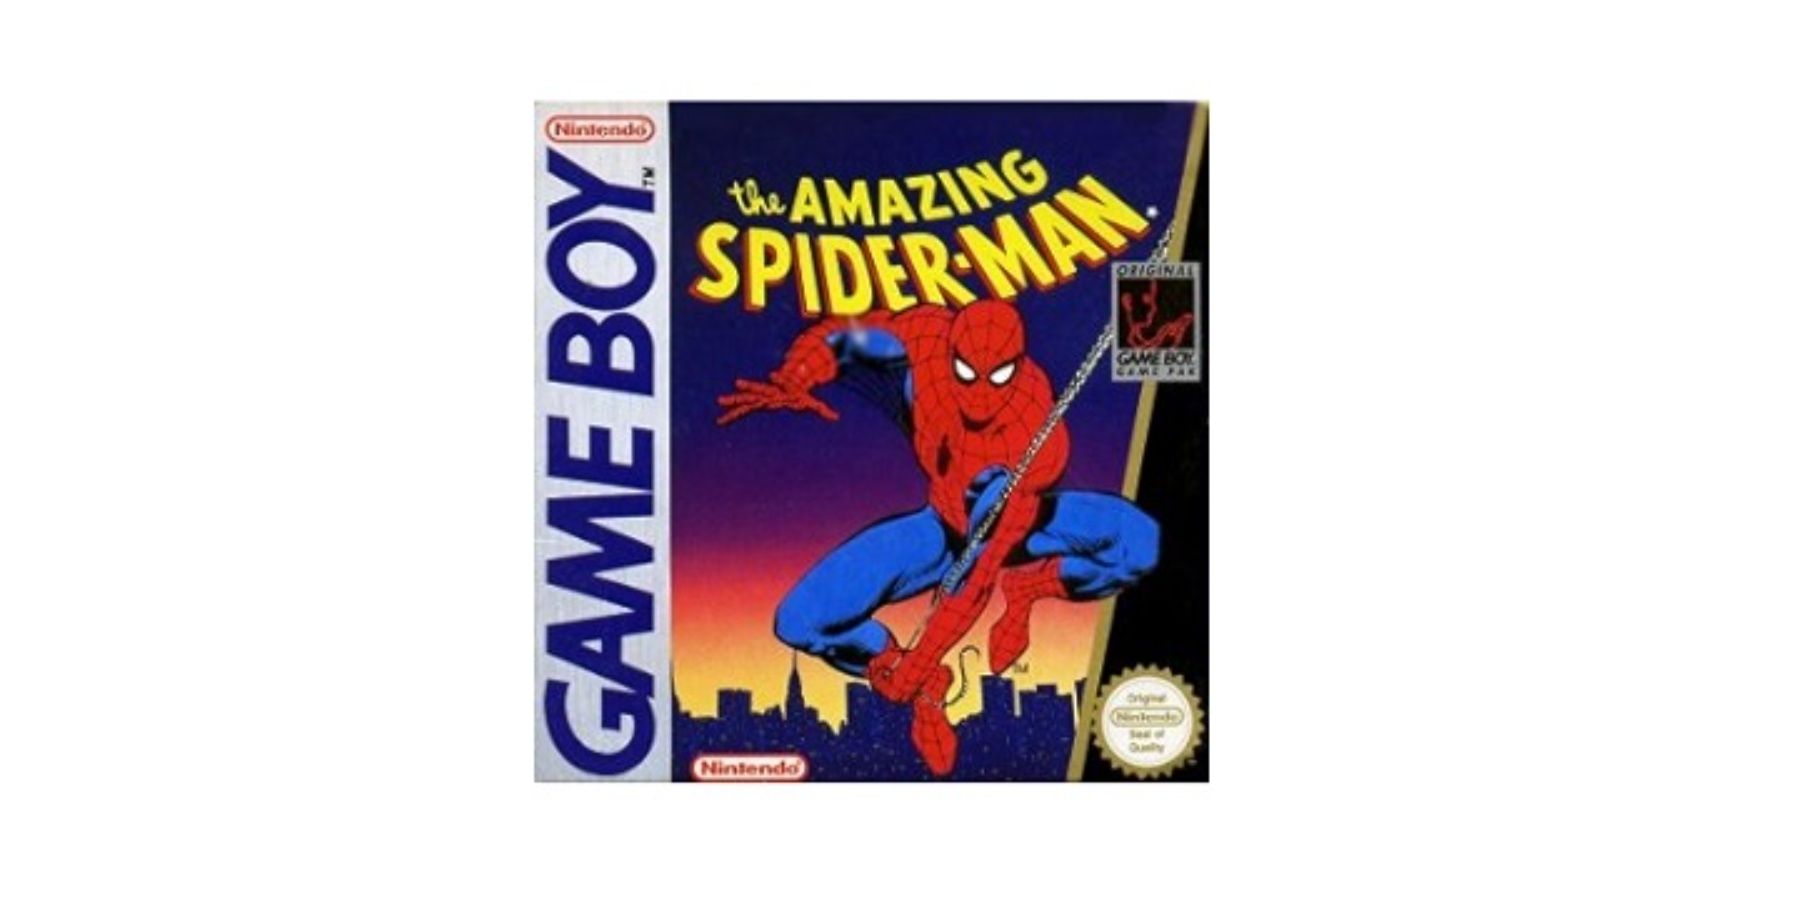 The Amazing Spider-Man Game Boy